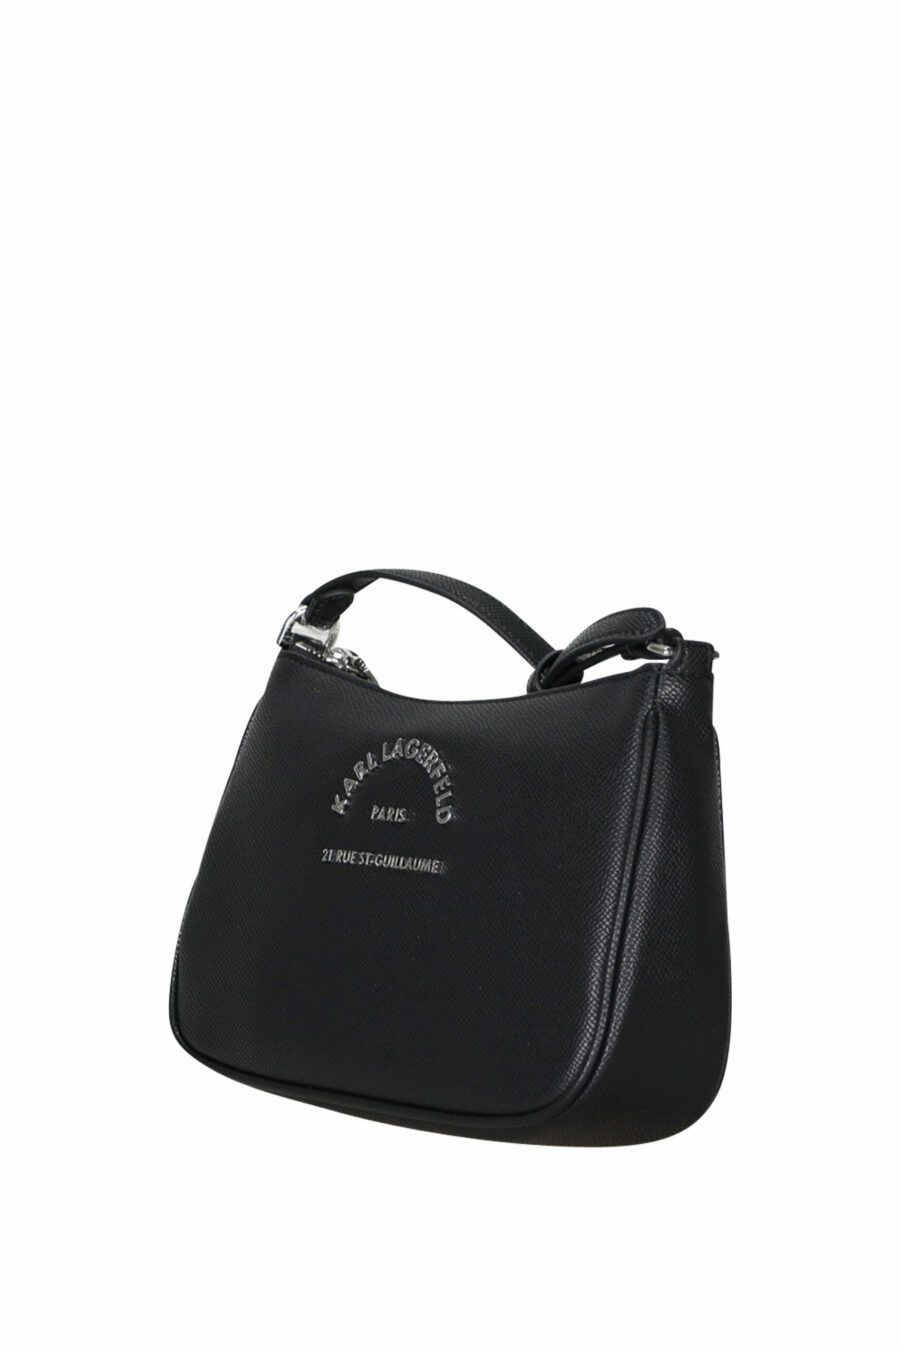 Black shoulder bag with mini-logo "rue st guillaume" - 8720744417132 1 scaled